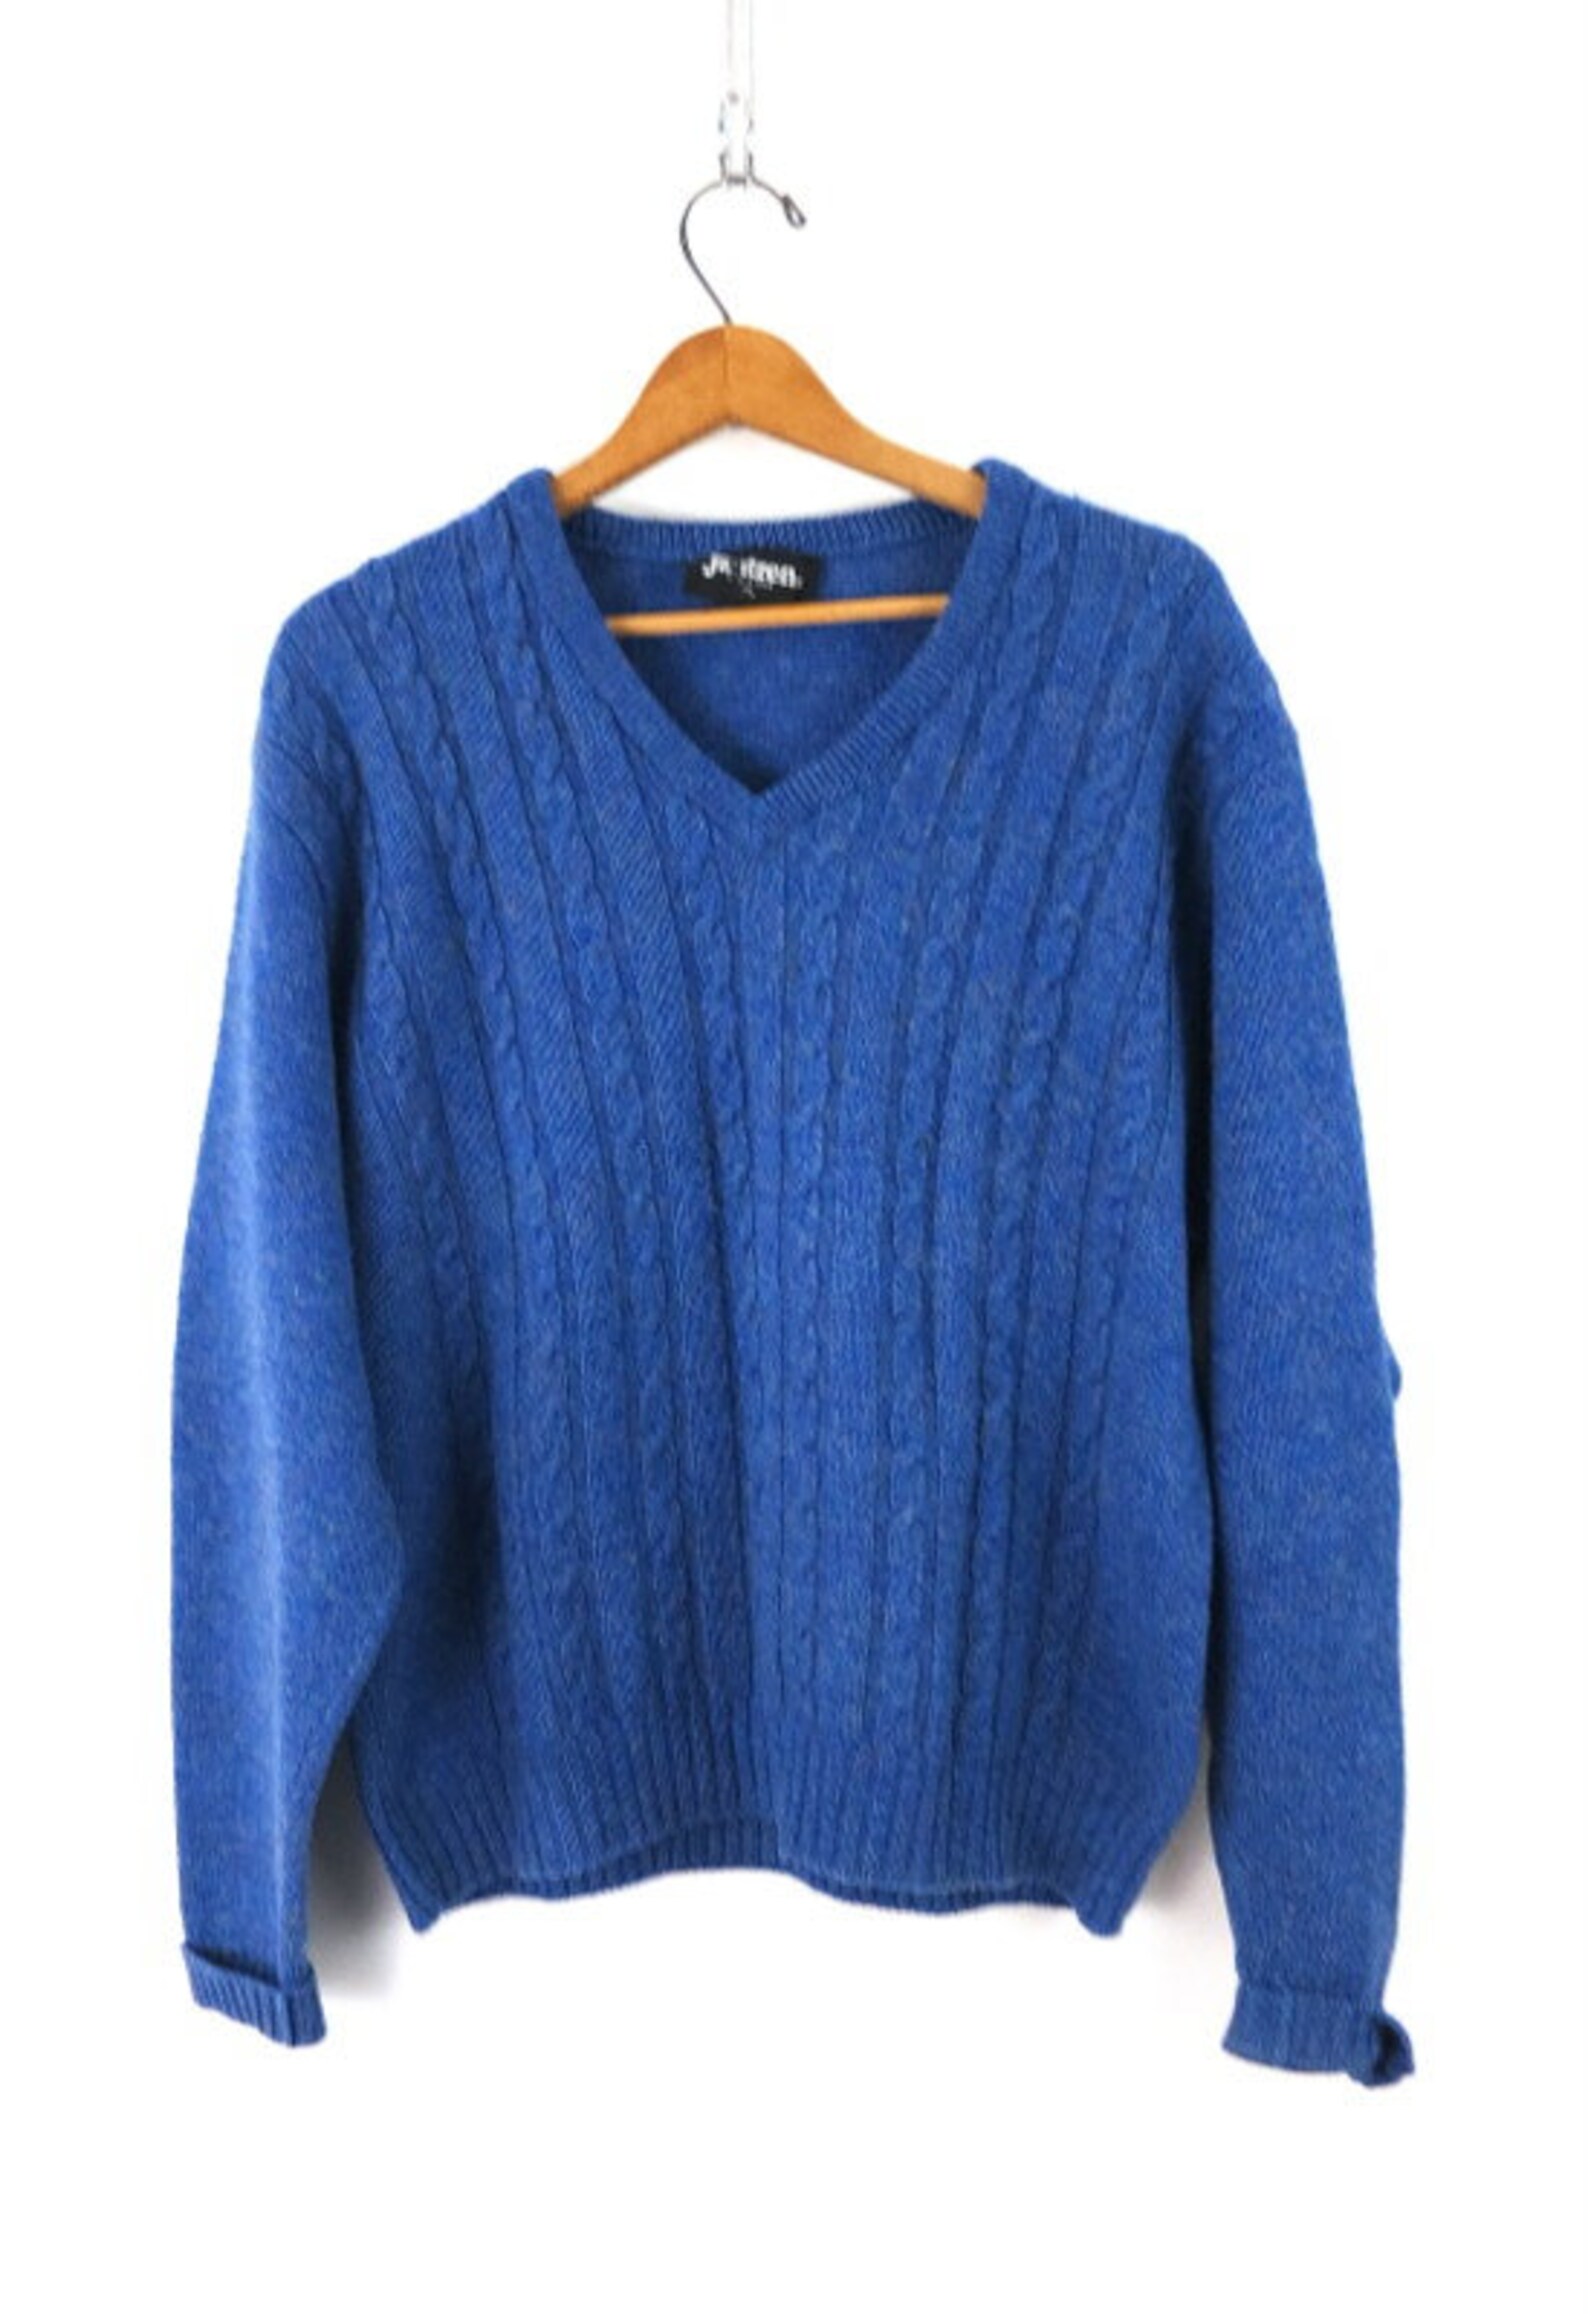 Vintage Jantzen Sweater Blue Canble Knit V-Neck sweater 80s | Etsy